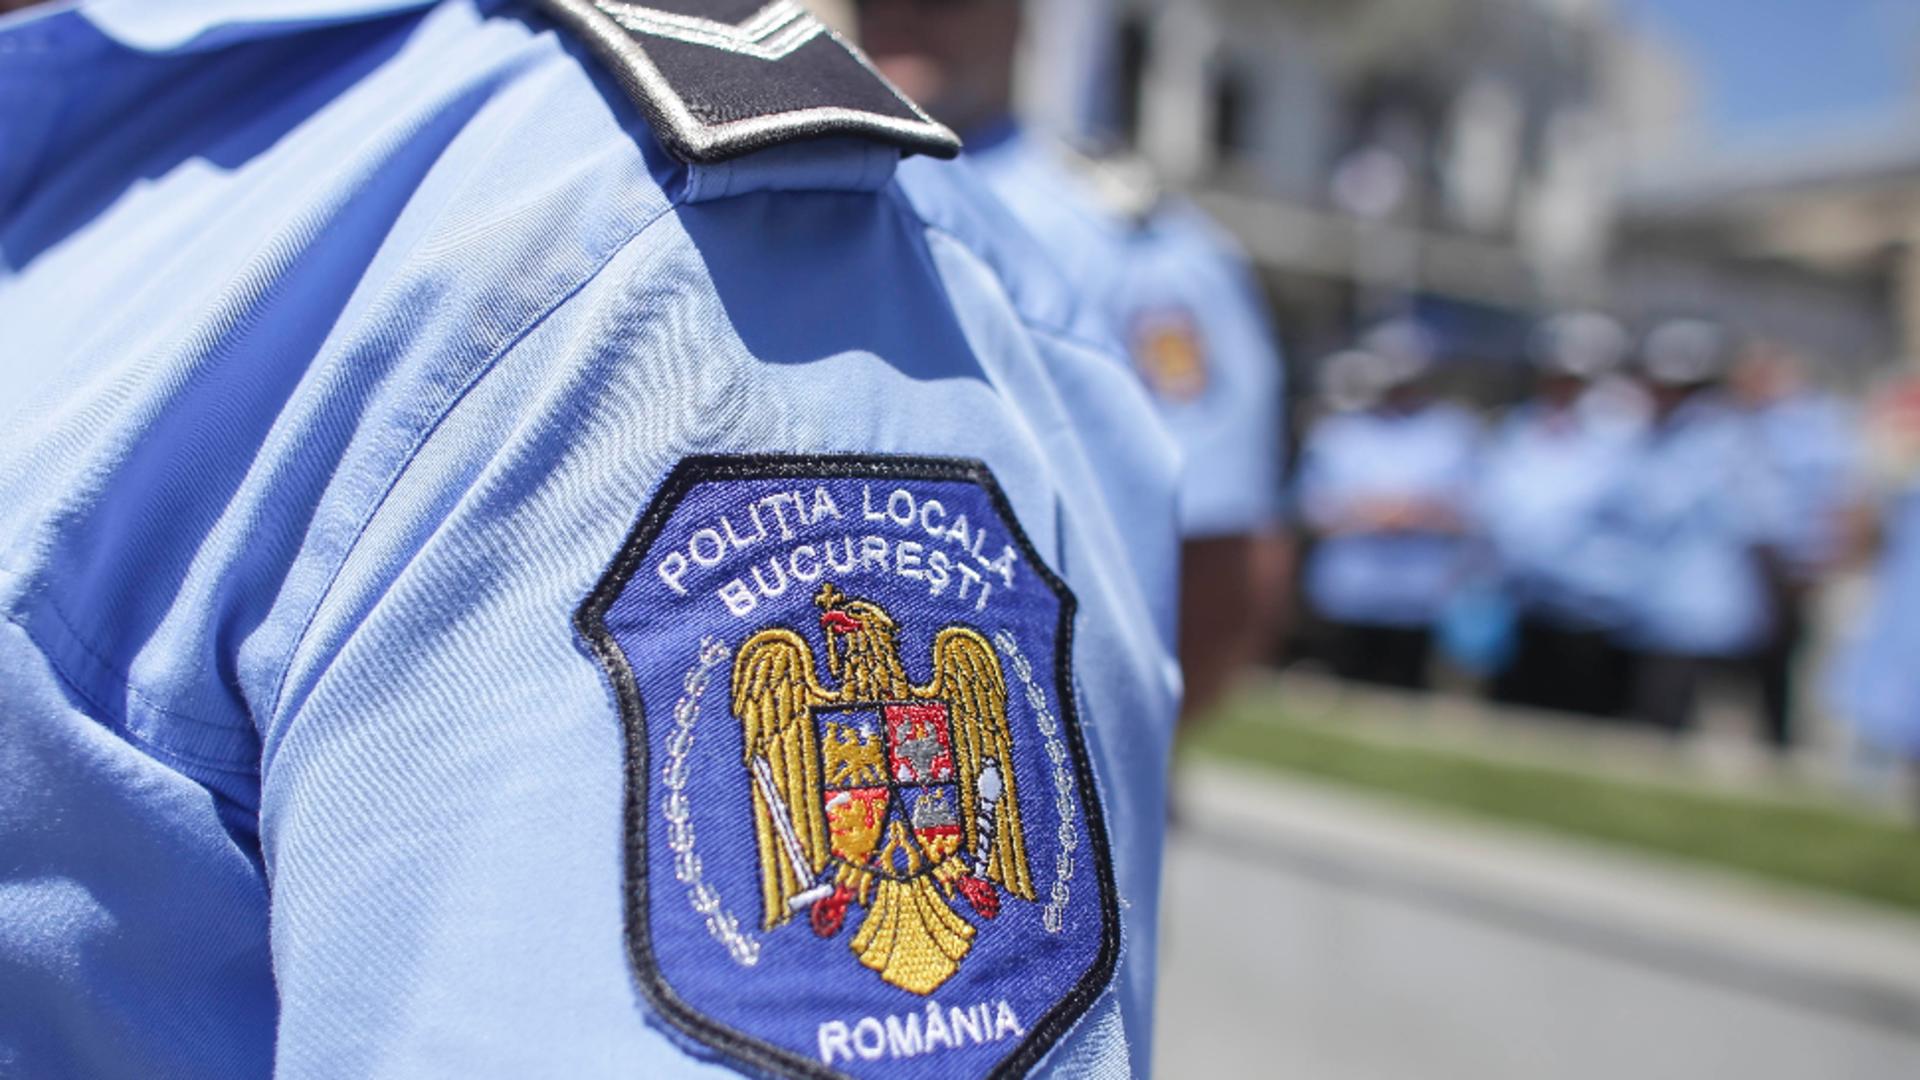 Agenți de poliție, acuzați de rasism și violență. Incident șocant, într-un parc din București / Foto: Inquam Photos